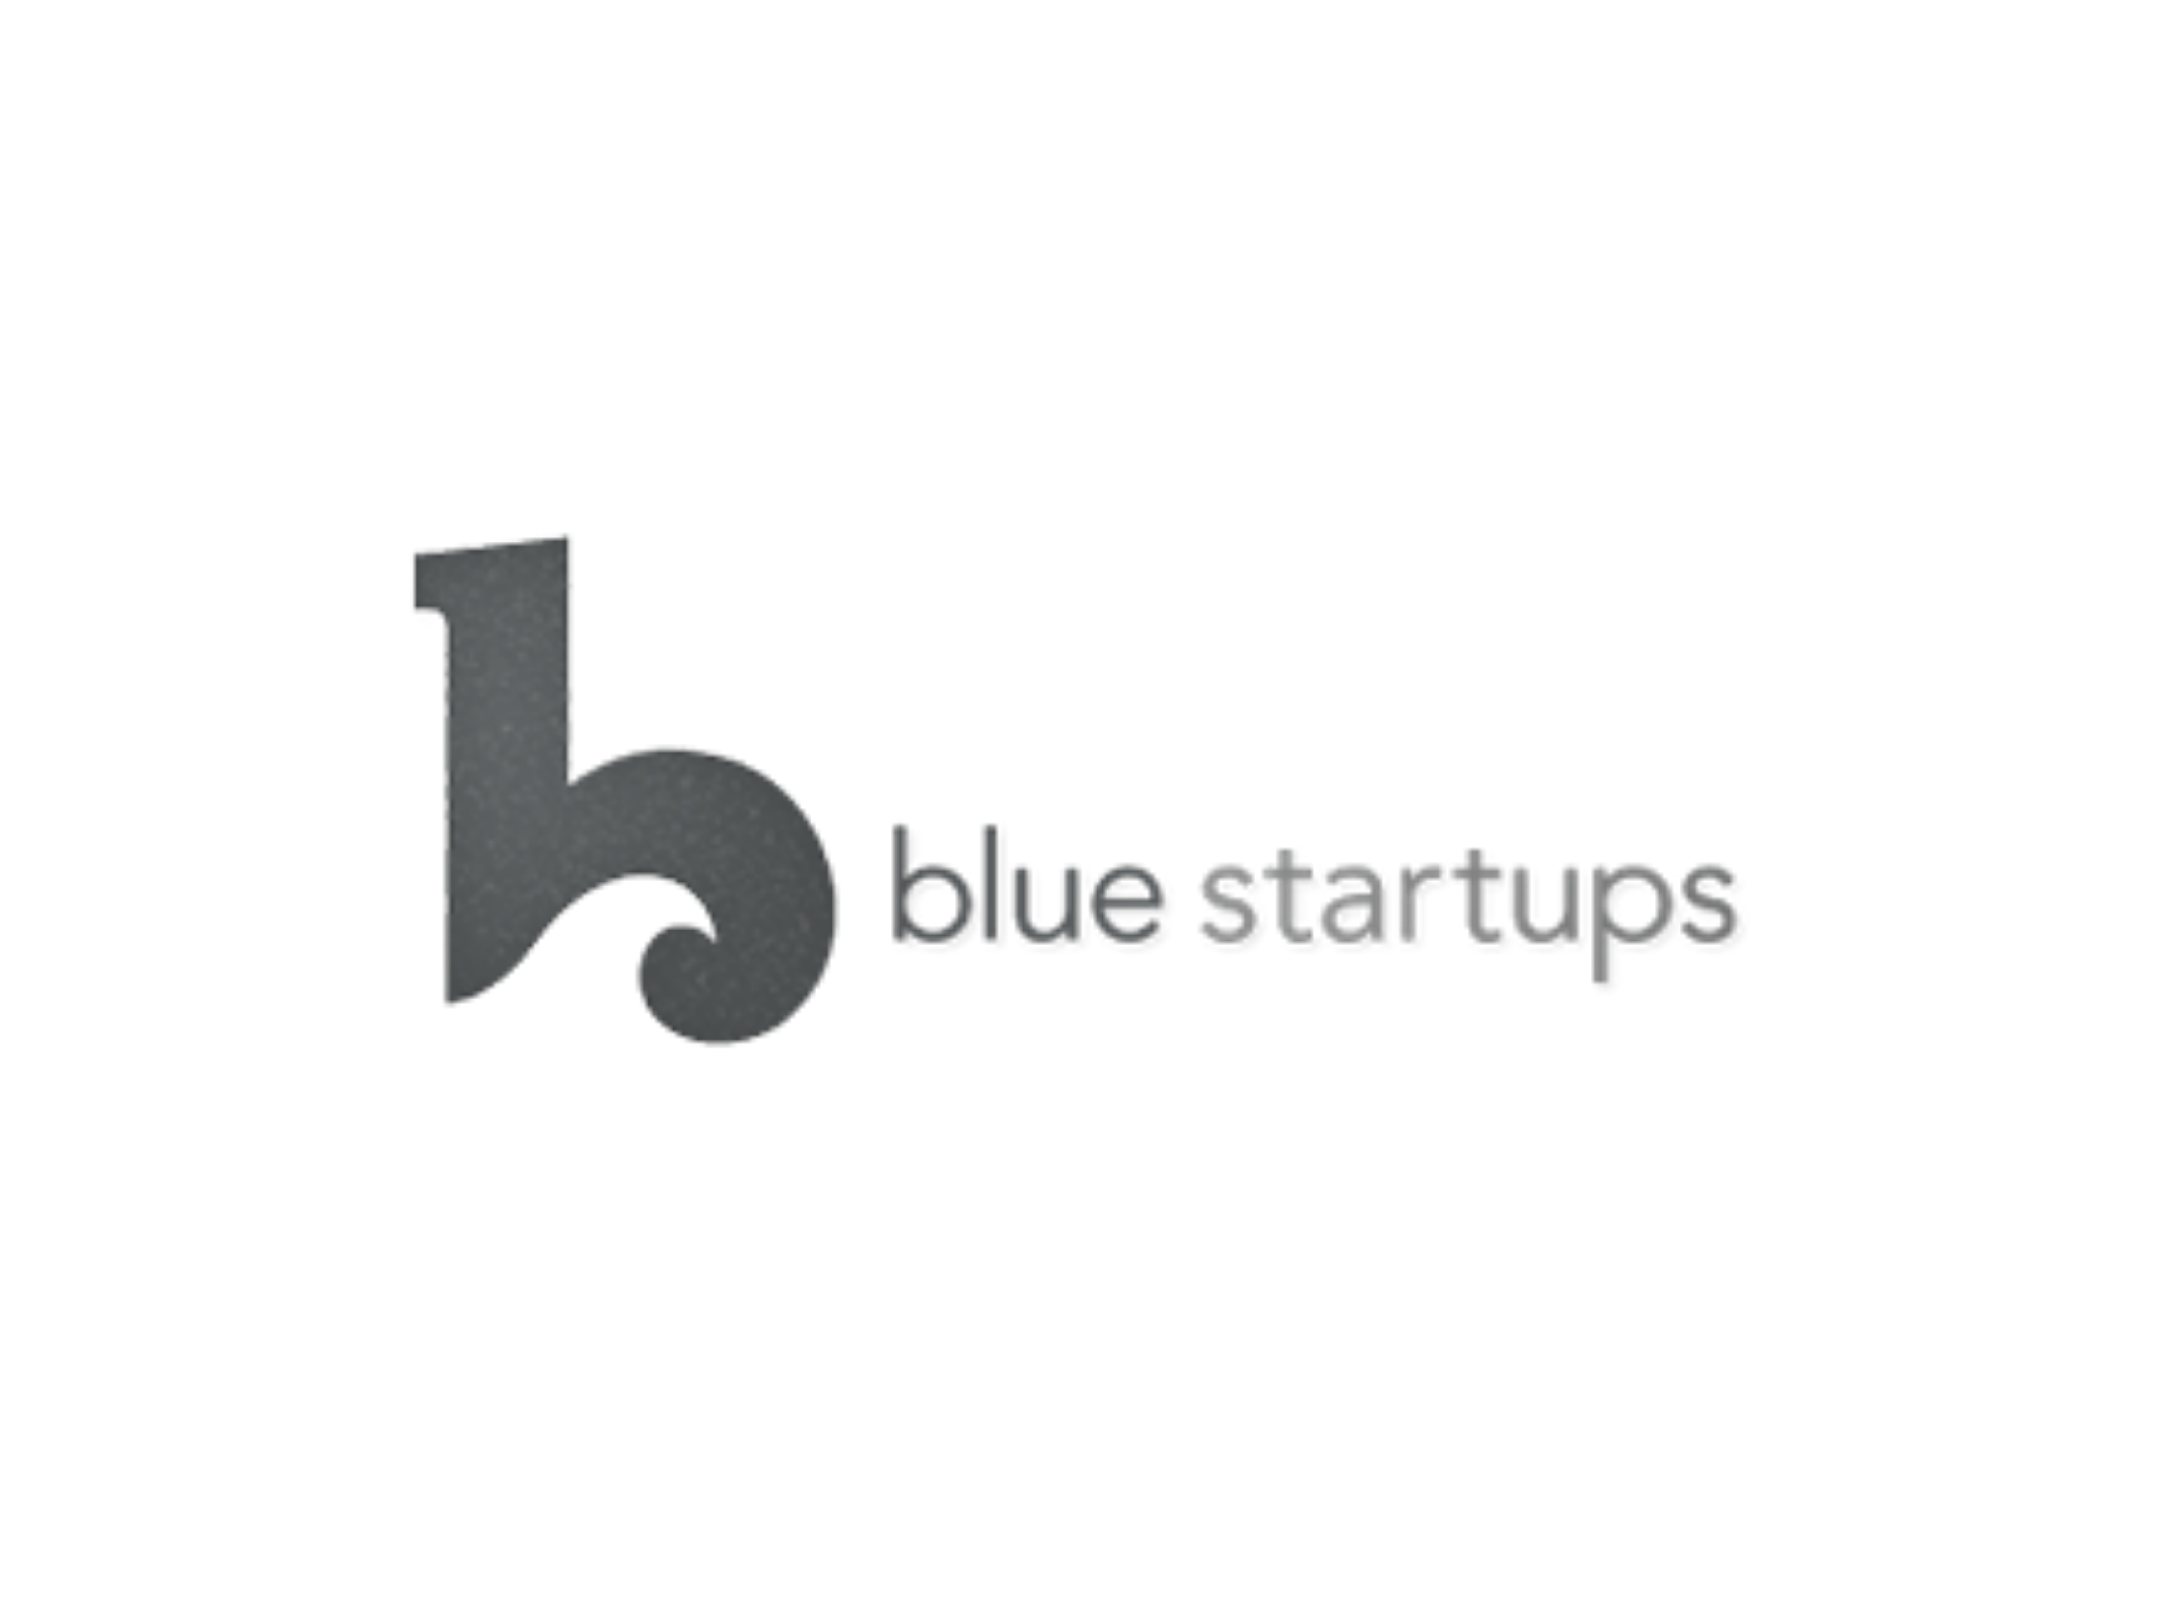 blue startups